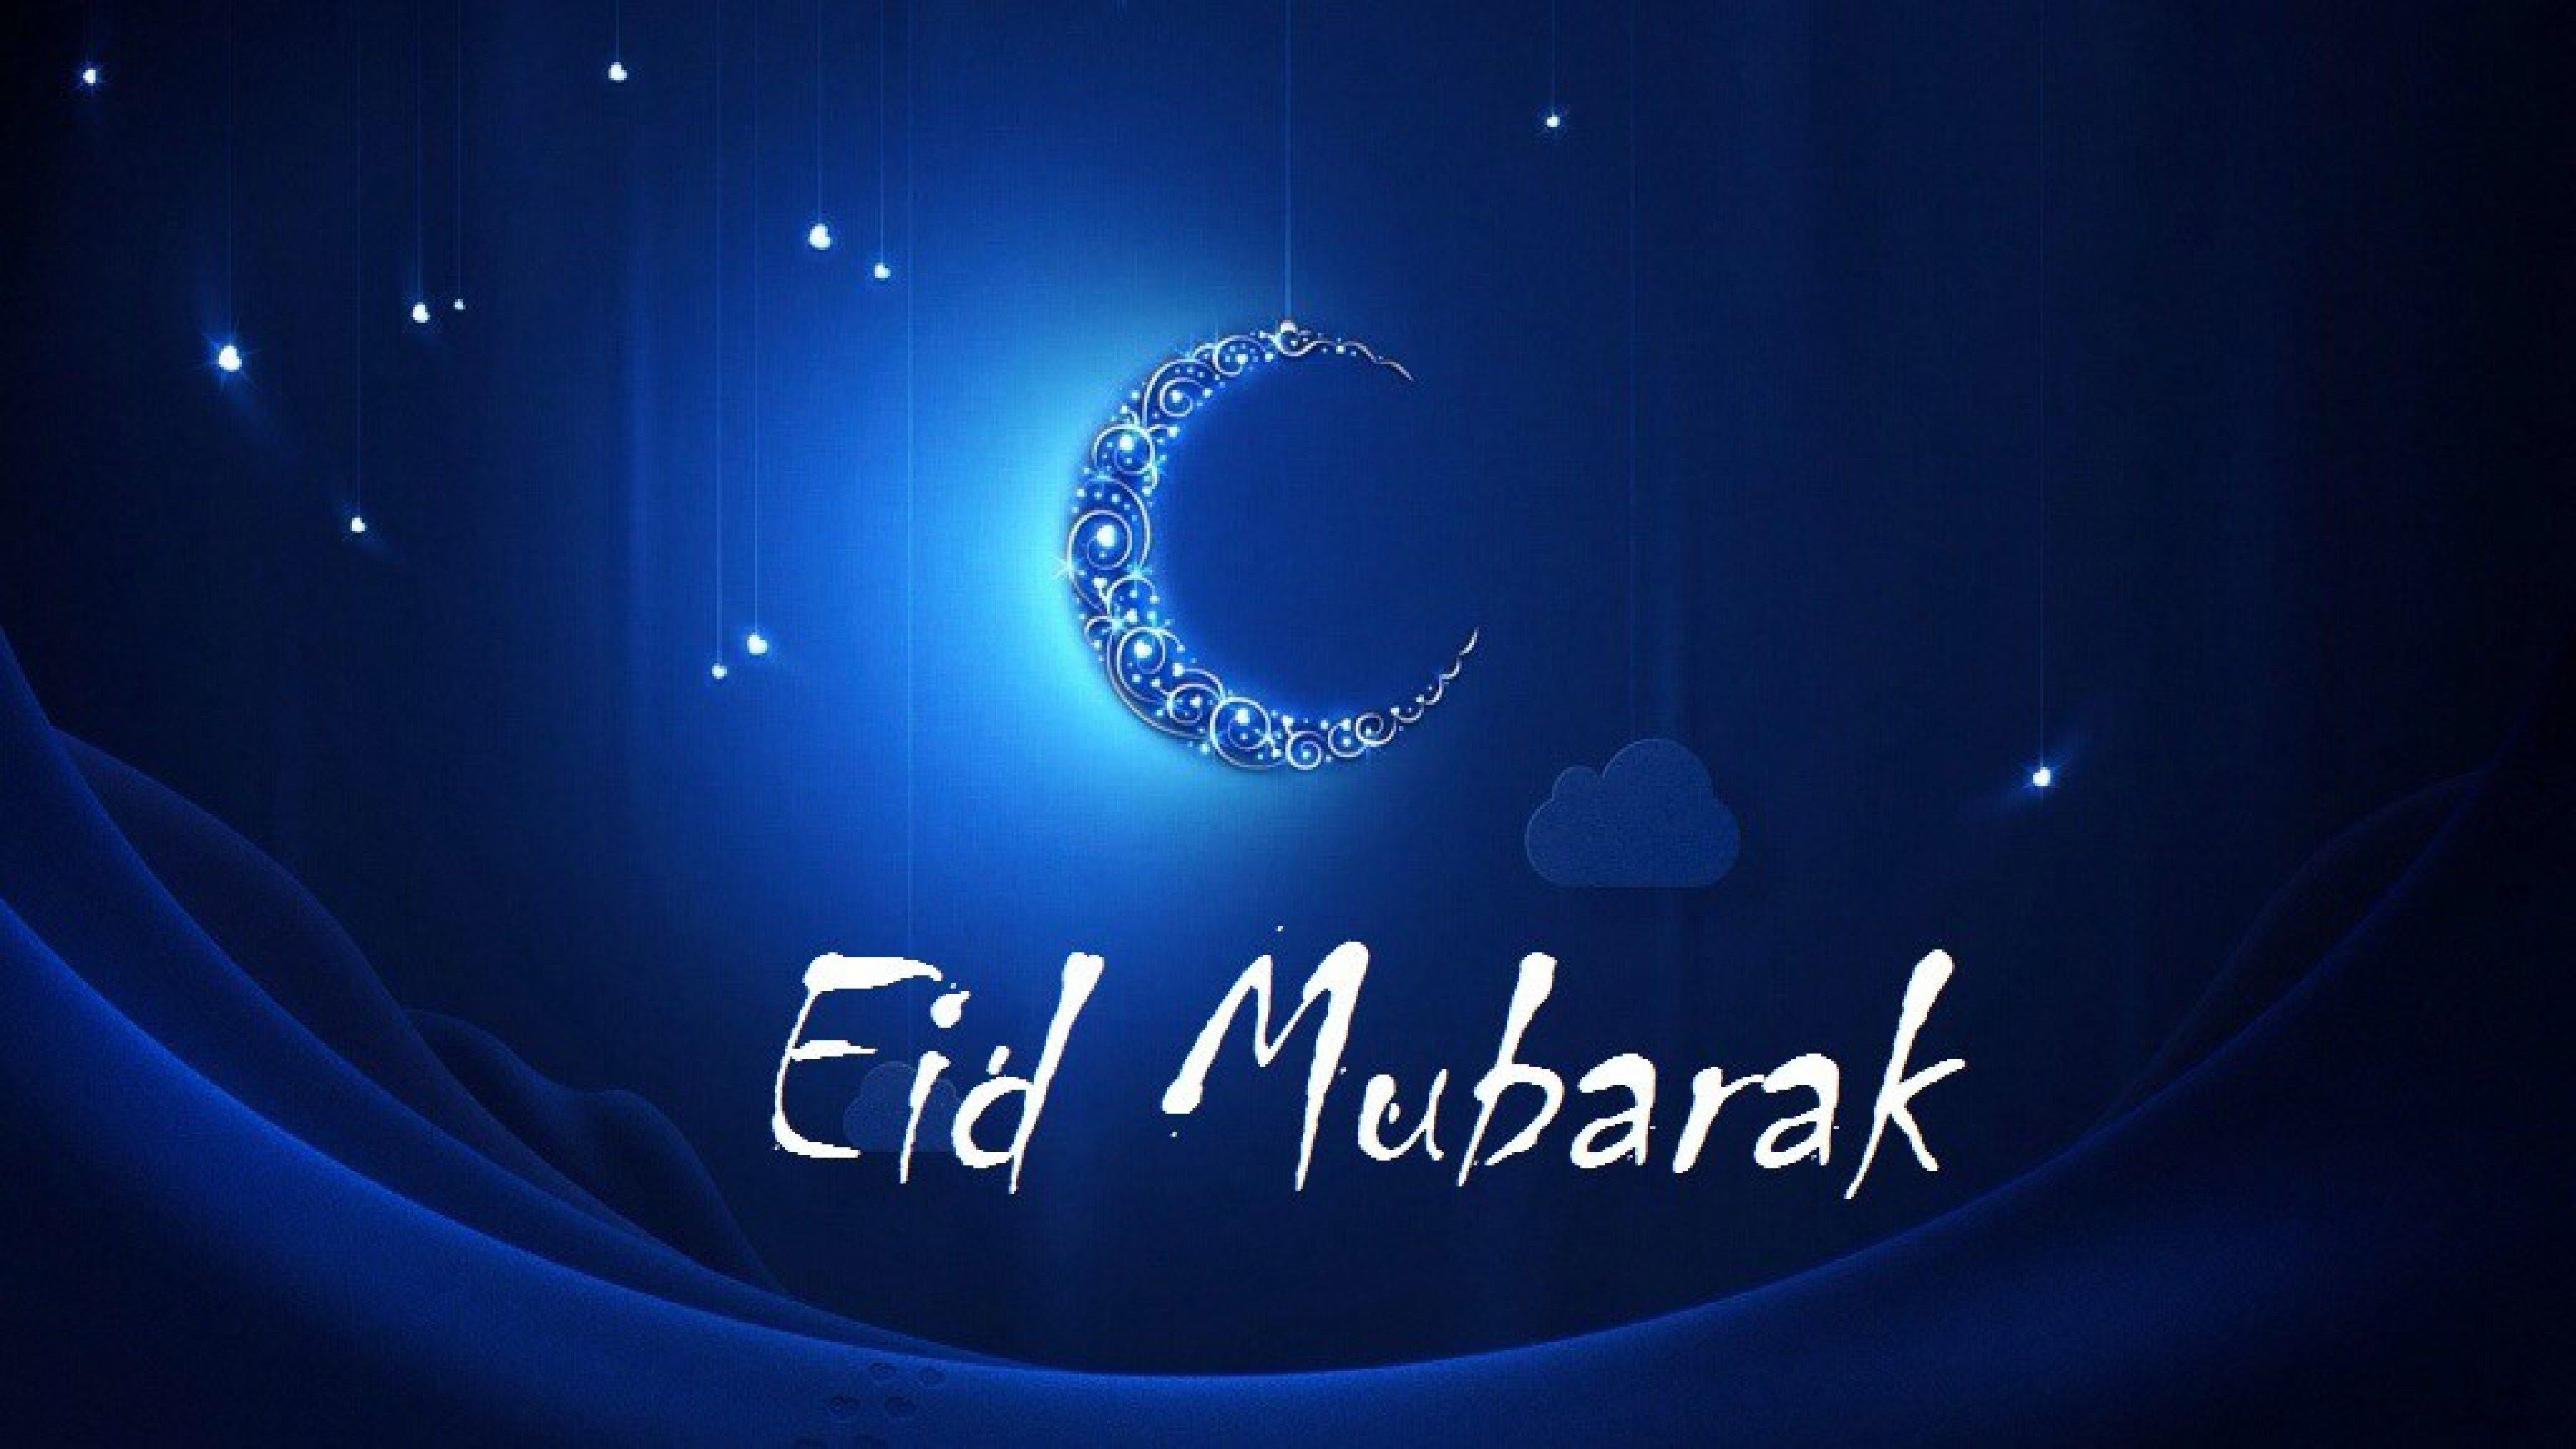 Eid Mubarak Ultra HD 4K Wallpaper 2018. Eid mubarak, Happy eid